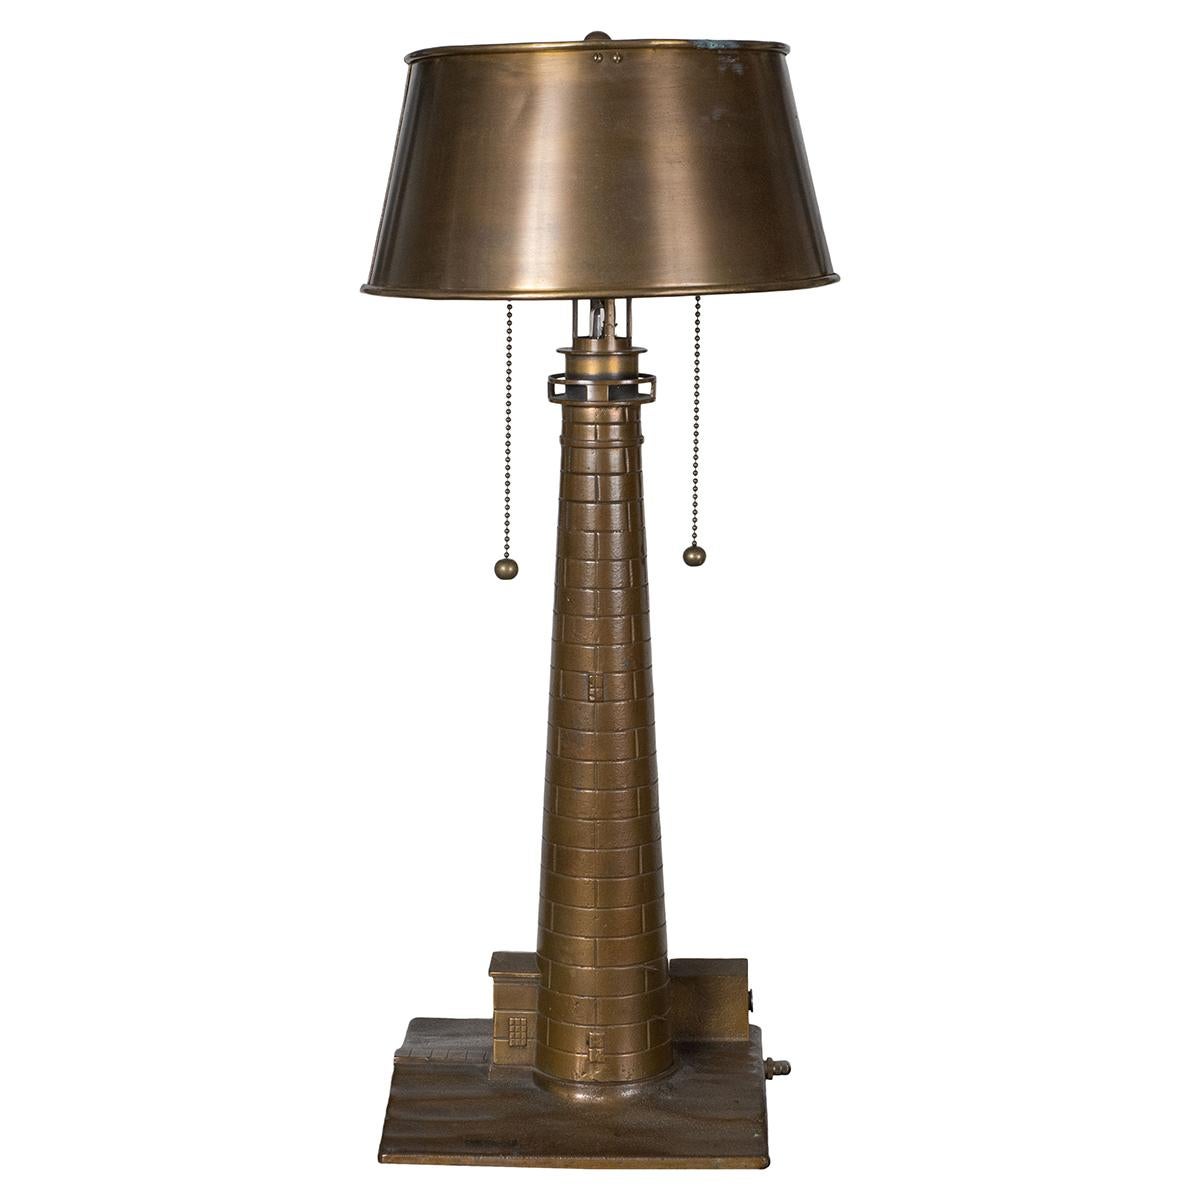 Leuchtturm-Tischlampe aus Bronzeguss mit originalem Metallschirm. Ausgestattet mit Zugkettenschaltern und einem Basisschalter, der ein kleineres zentrales Licht steuert.